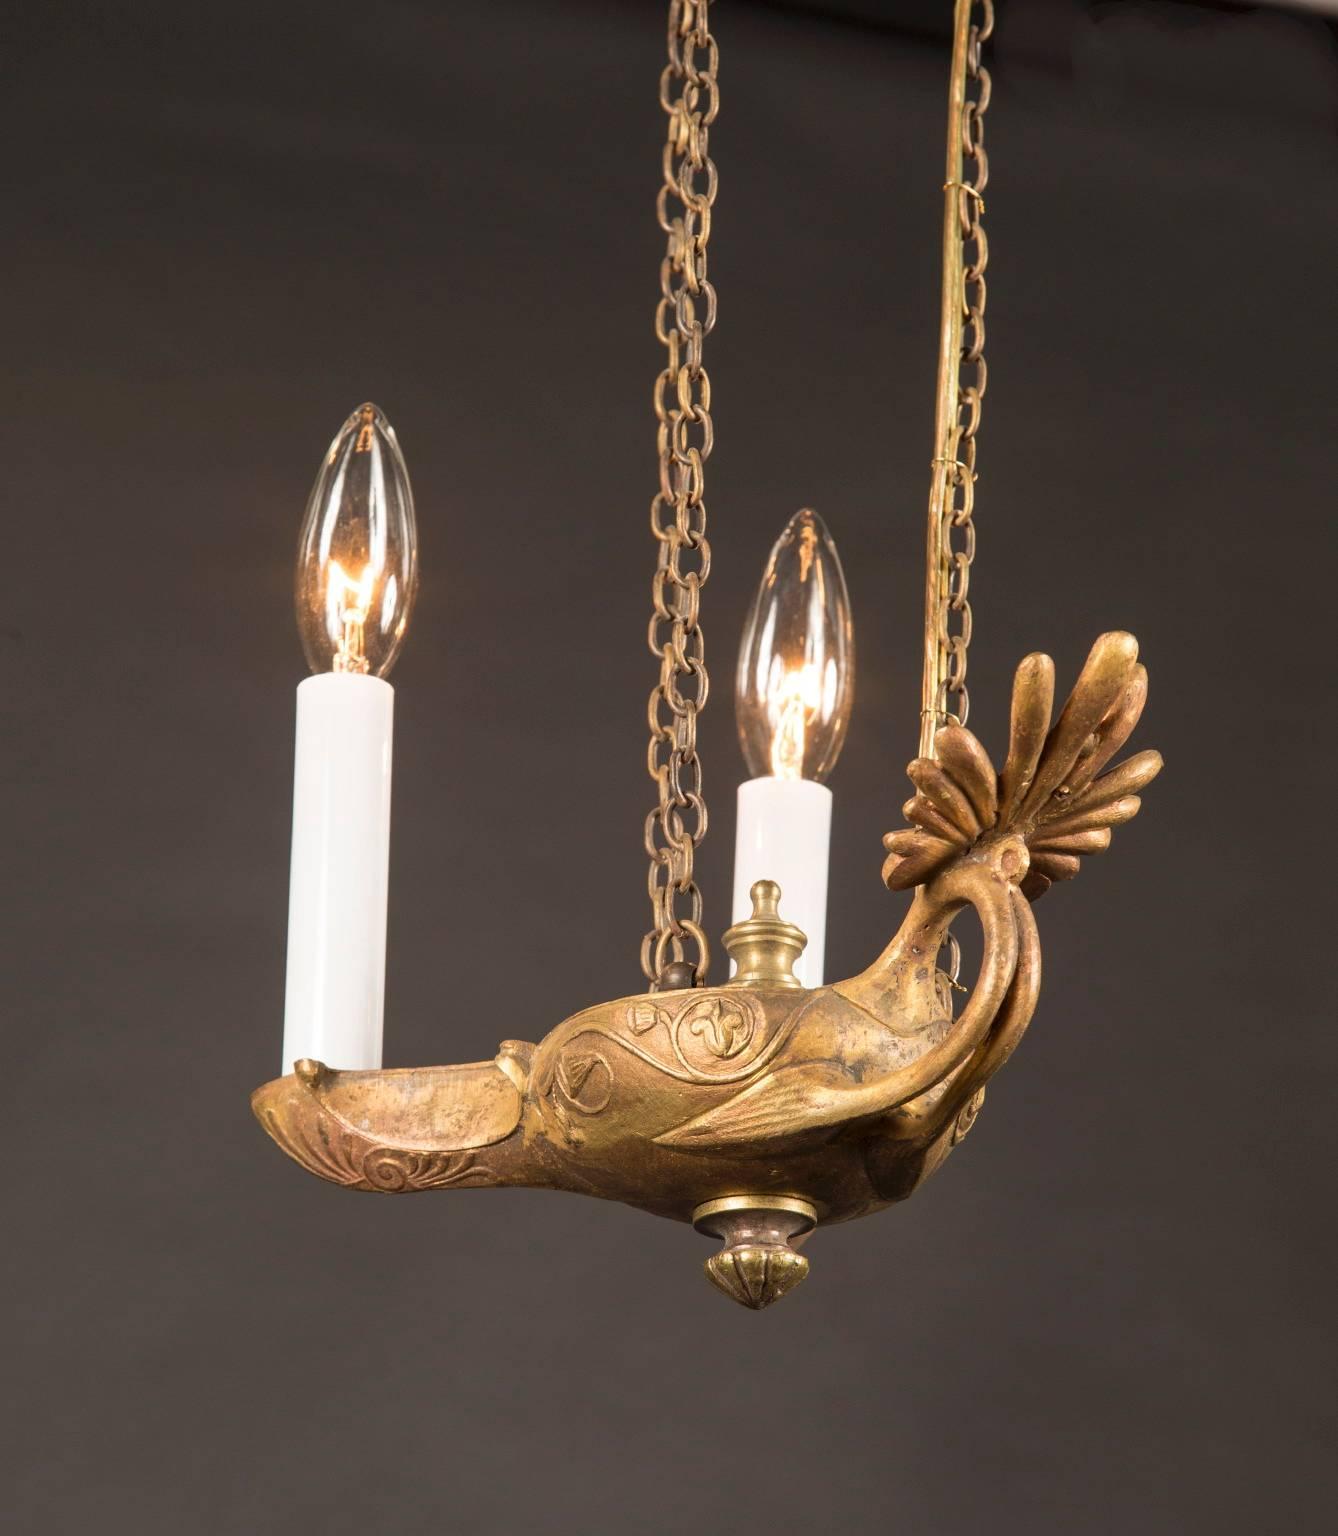 Dieses Paar französischer Bronze-Öllampen stammt aus dem 19. Jahrhundert und hängt an einer wunderschönen, schweren Kette. Die Krone ähnelt einem gotischen Sonnenaufgang und ist in drei Positionen mit der Lampe verbunden. Die Lampe selbst zeichnet